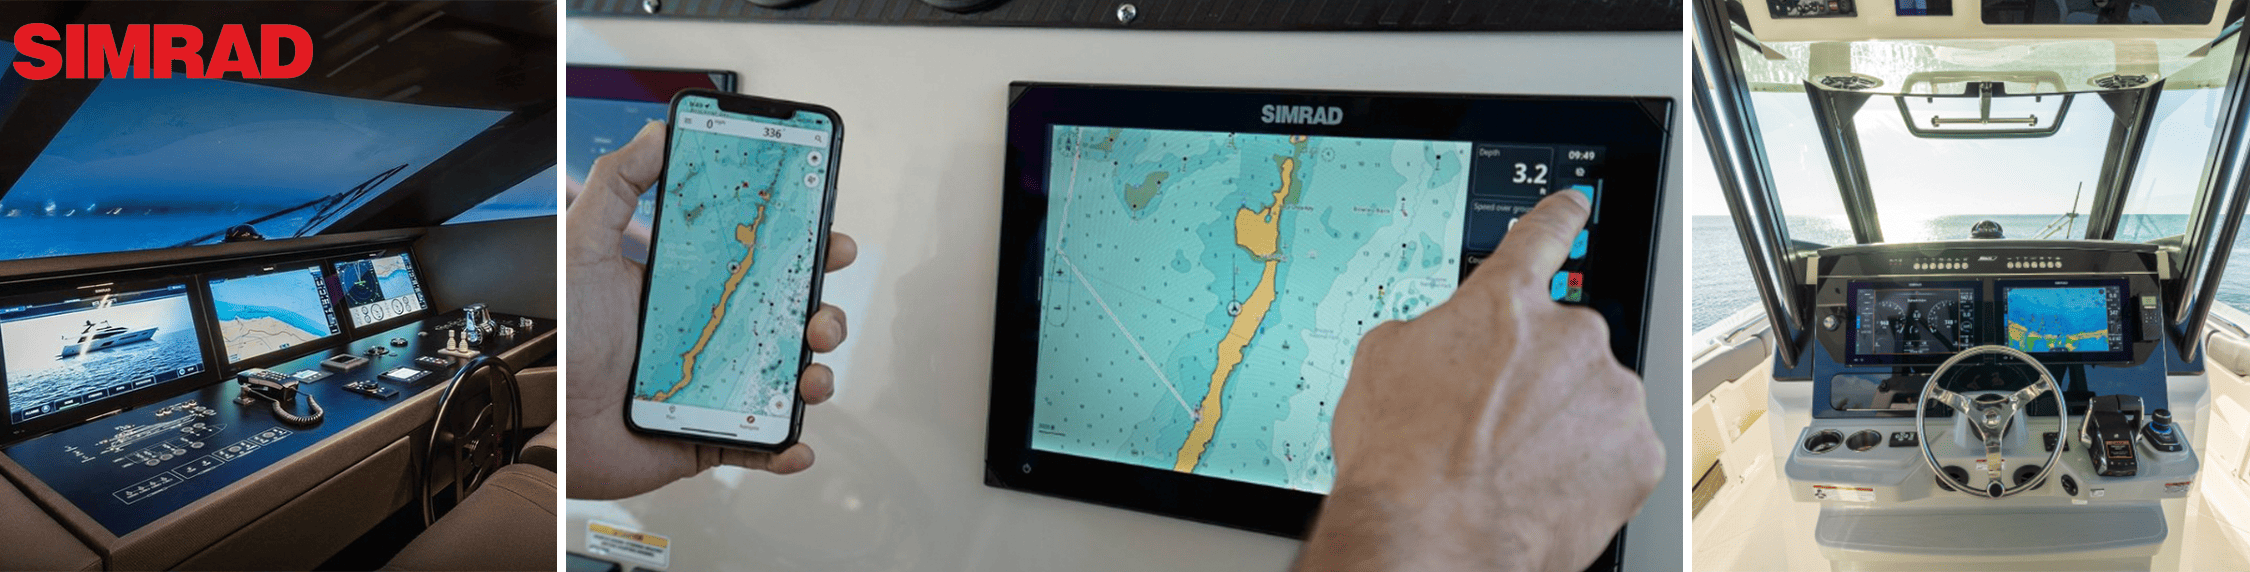 Simrad Multifunction Displays, Chartplotters & Fishfinders